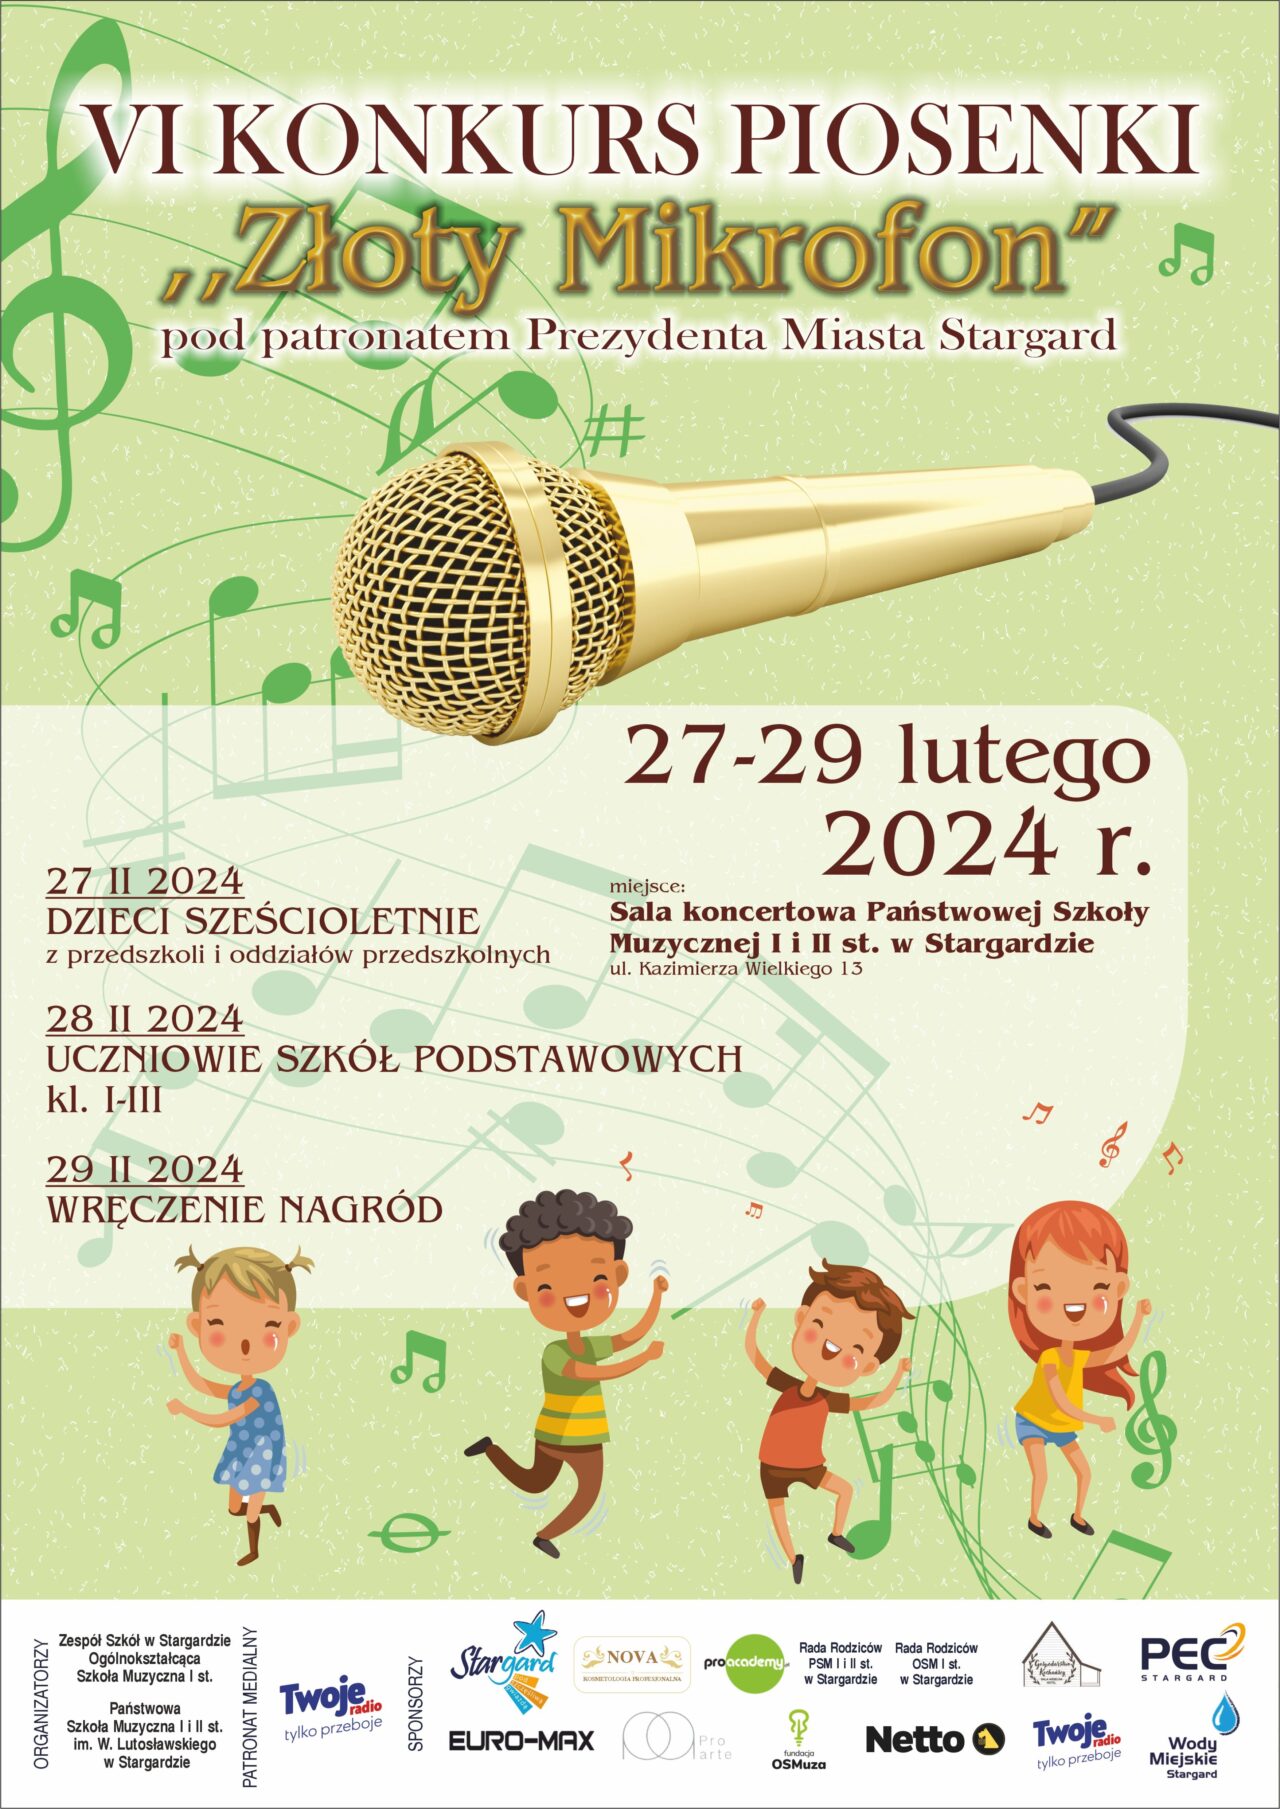 Plakat informujący o 6. Konkursie piosenki "Złoty Mikrofon" w dniach 27 do 29 lutego 2024 roku. Tło plakatu jest jasnozielone, w jego górnej części znajduje się złoty mikrofon a w dole śpiewające i tańczące dzieci. 